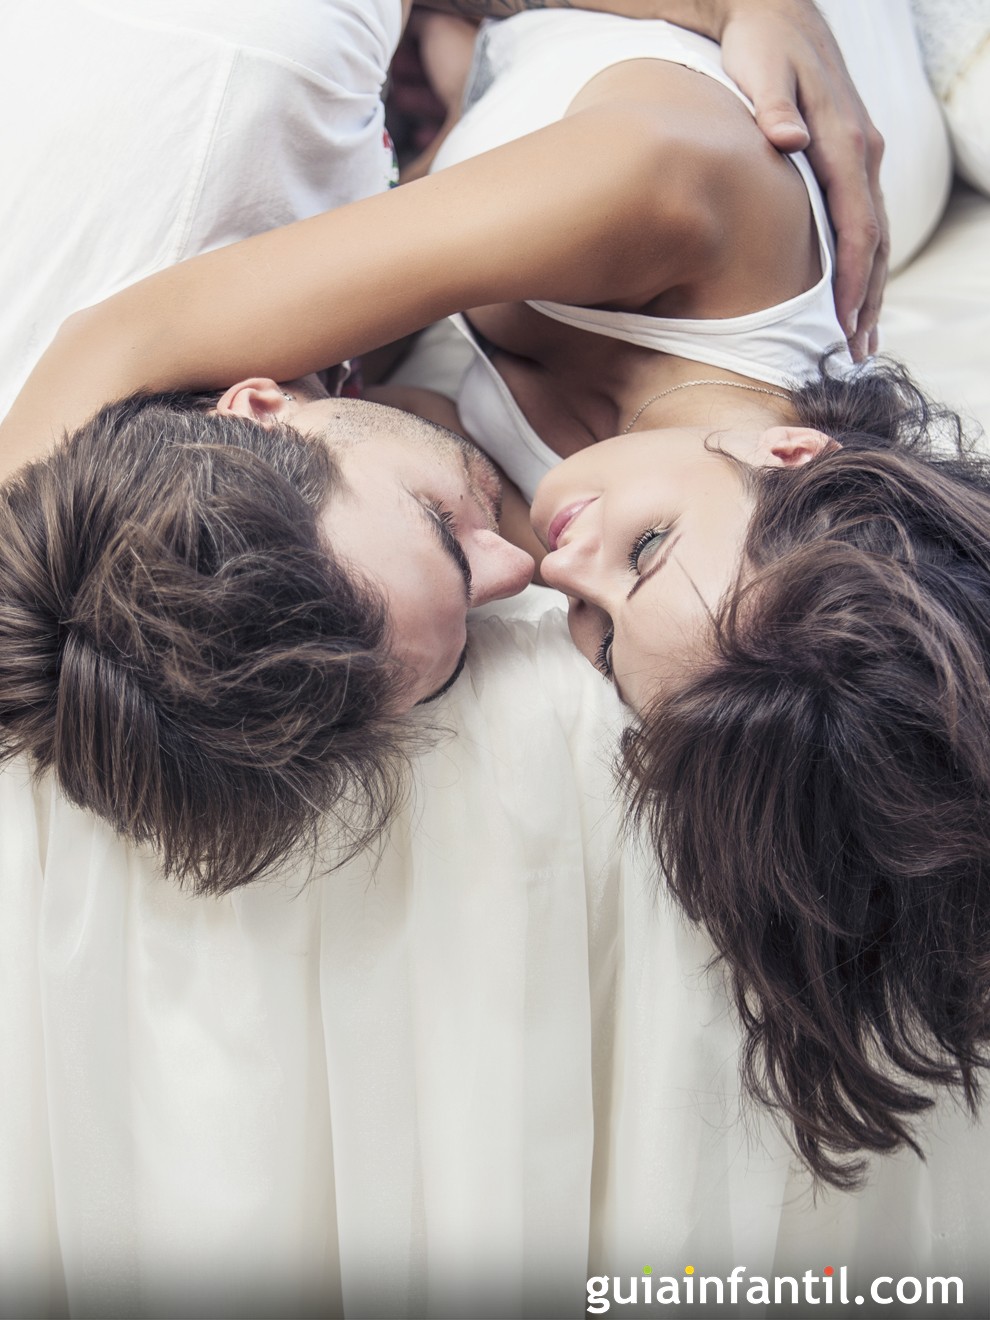 20 frases calientes para provocar a tu pareja